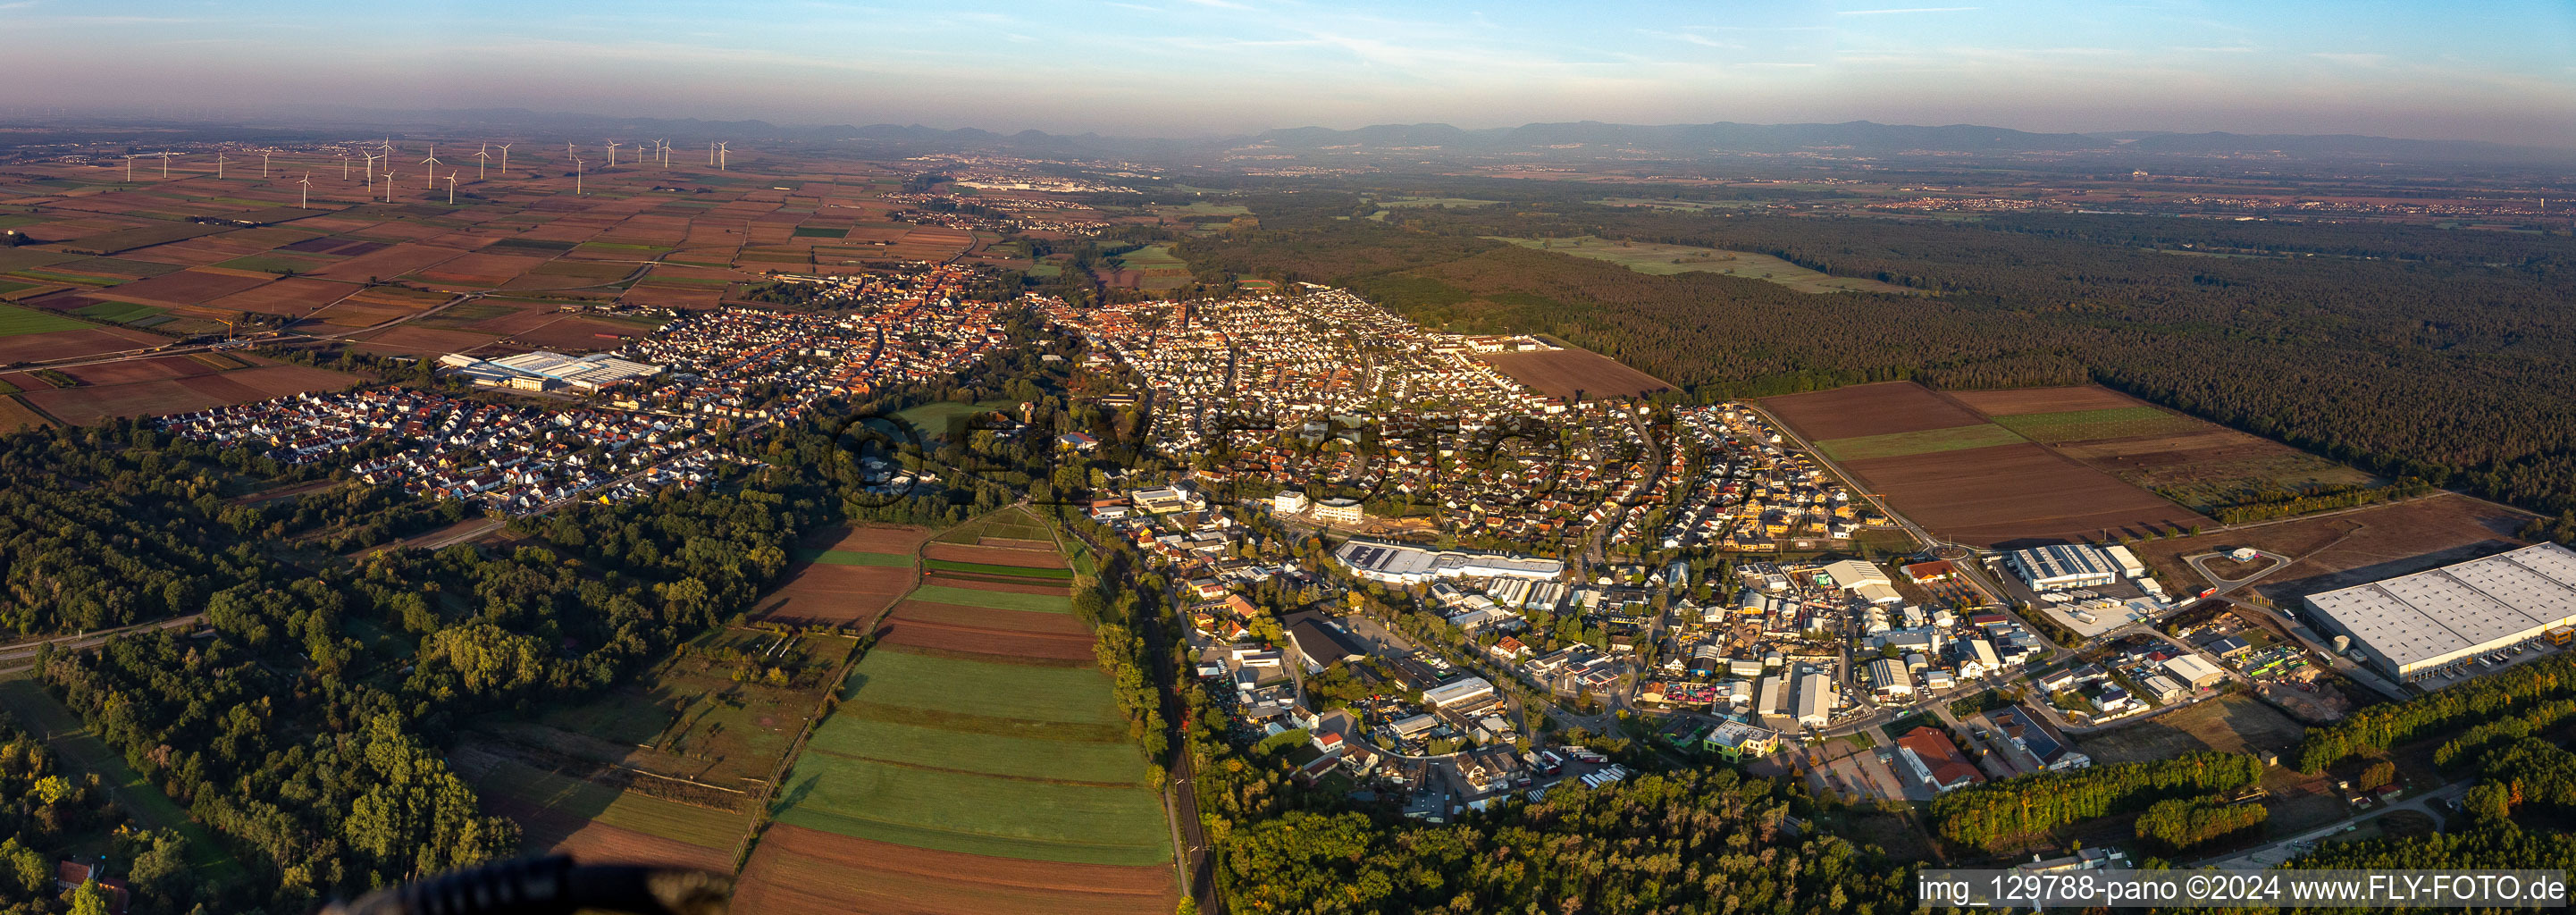 Vue aérienne de Panorama - perspective de la zone urbaine avec la périphérie et le centre-ville à Bellheim dans le département Rhénanie-Palatinat, Allemagne